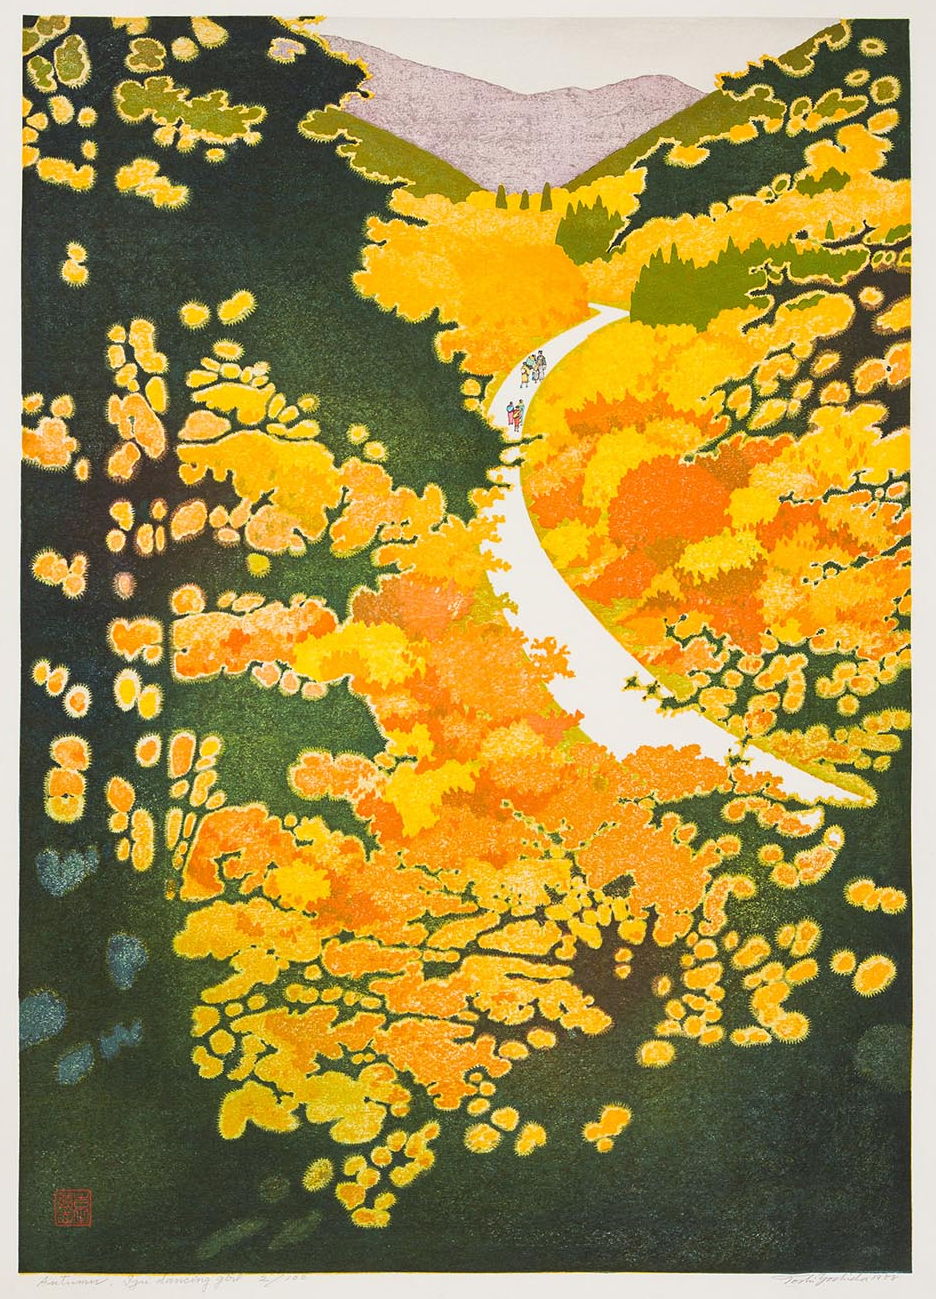 Toshi Yoshida “Autumn, Izu Dancing Girl” 1988 woodblock print